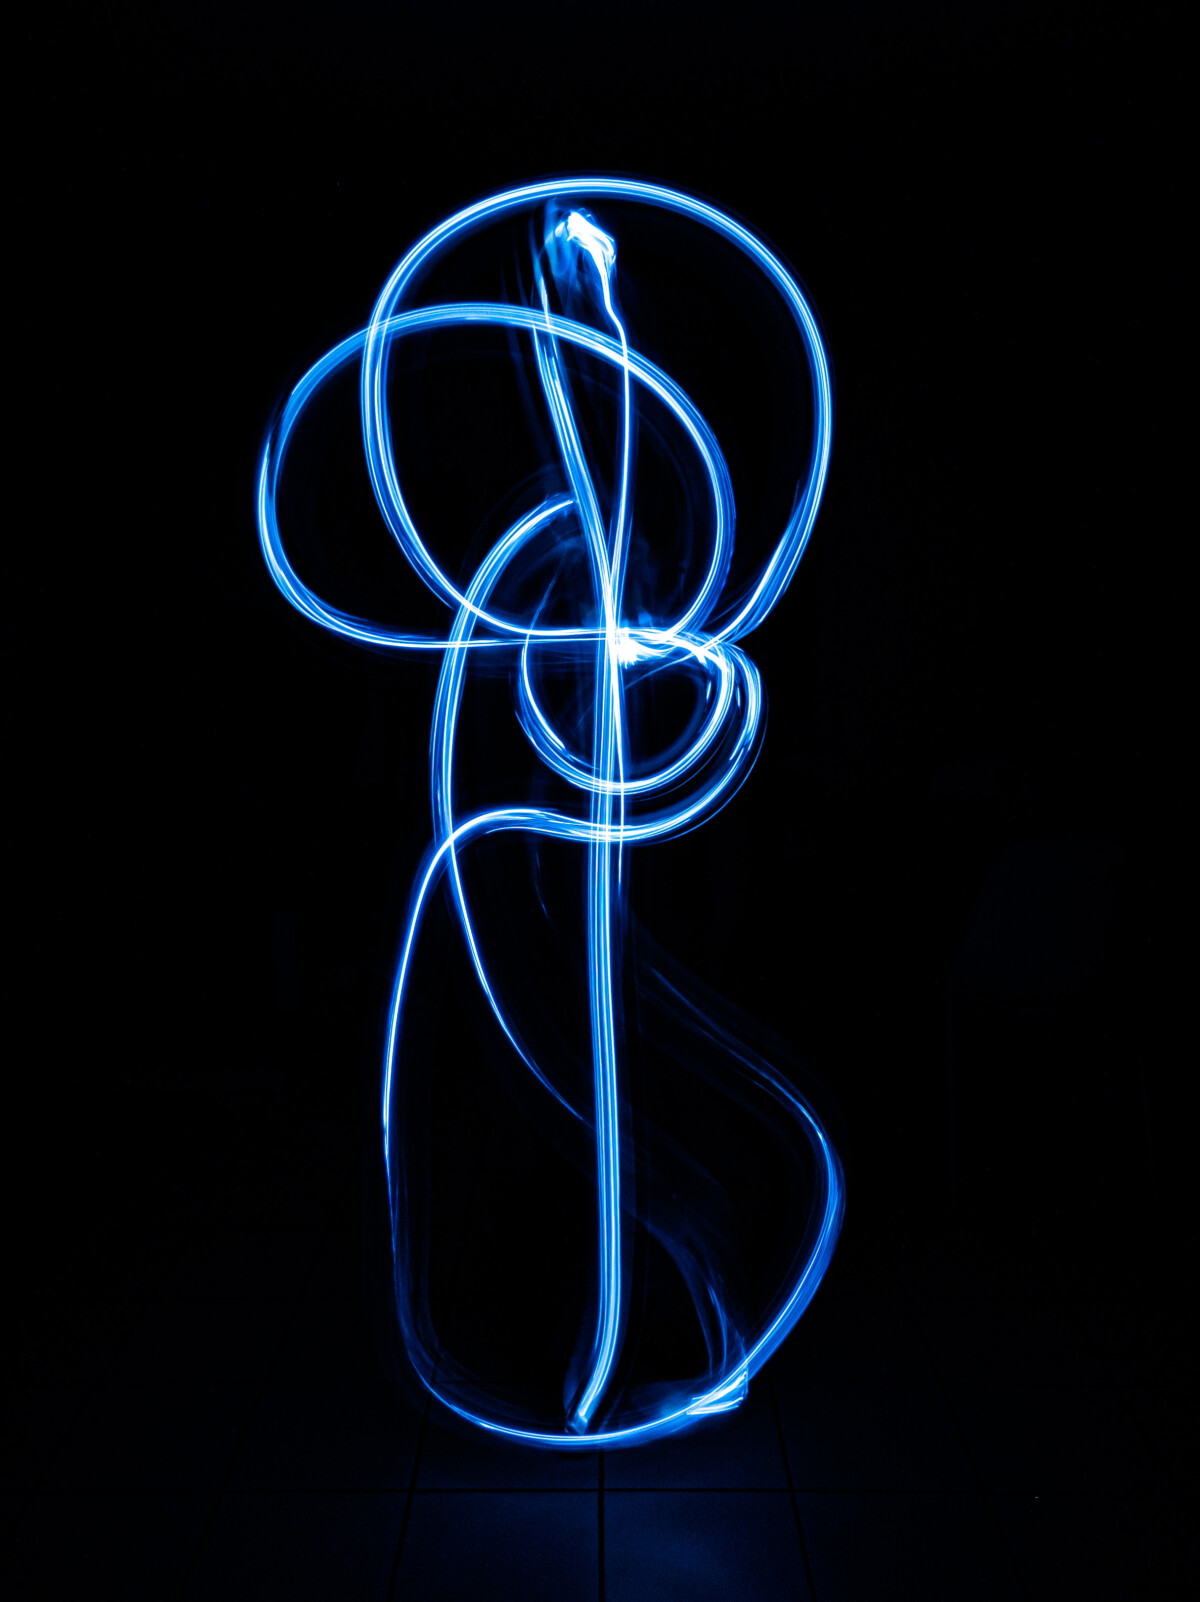 Light painting : comment dessiner des trainées lumineuses en photo avec son smartphone